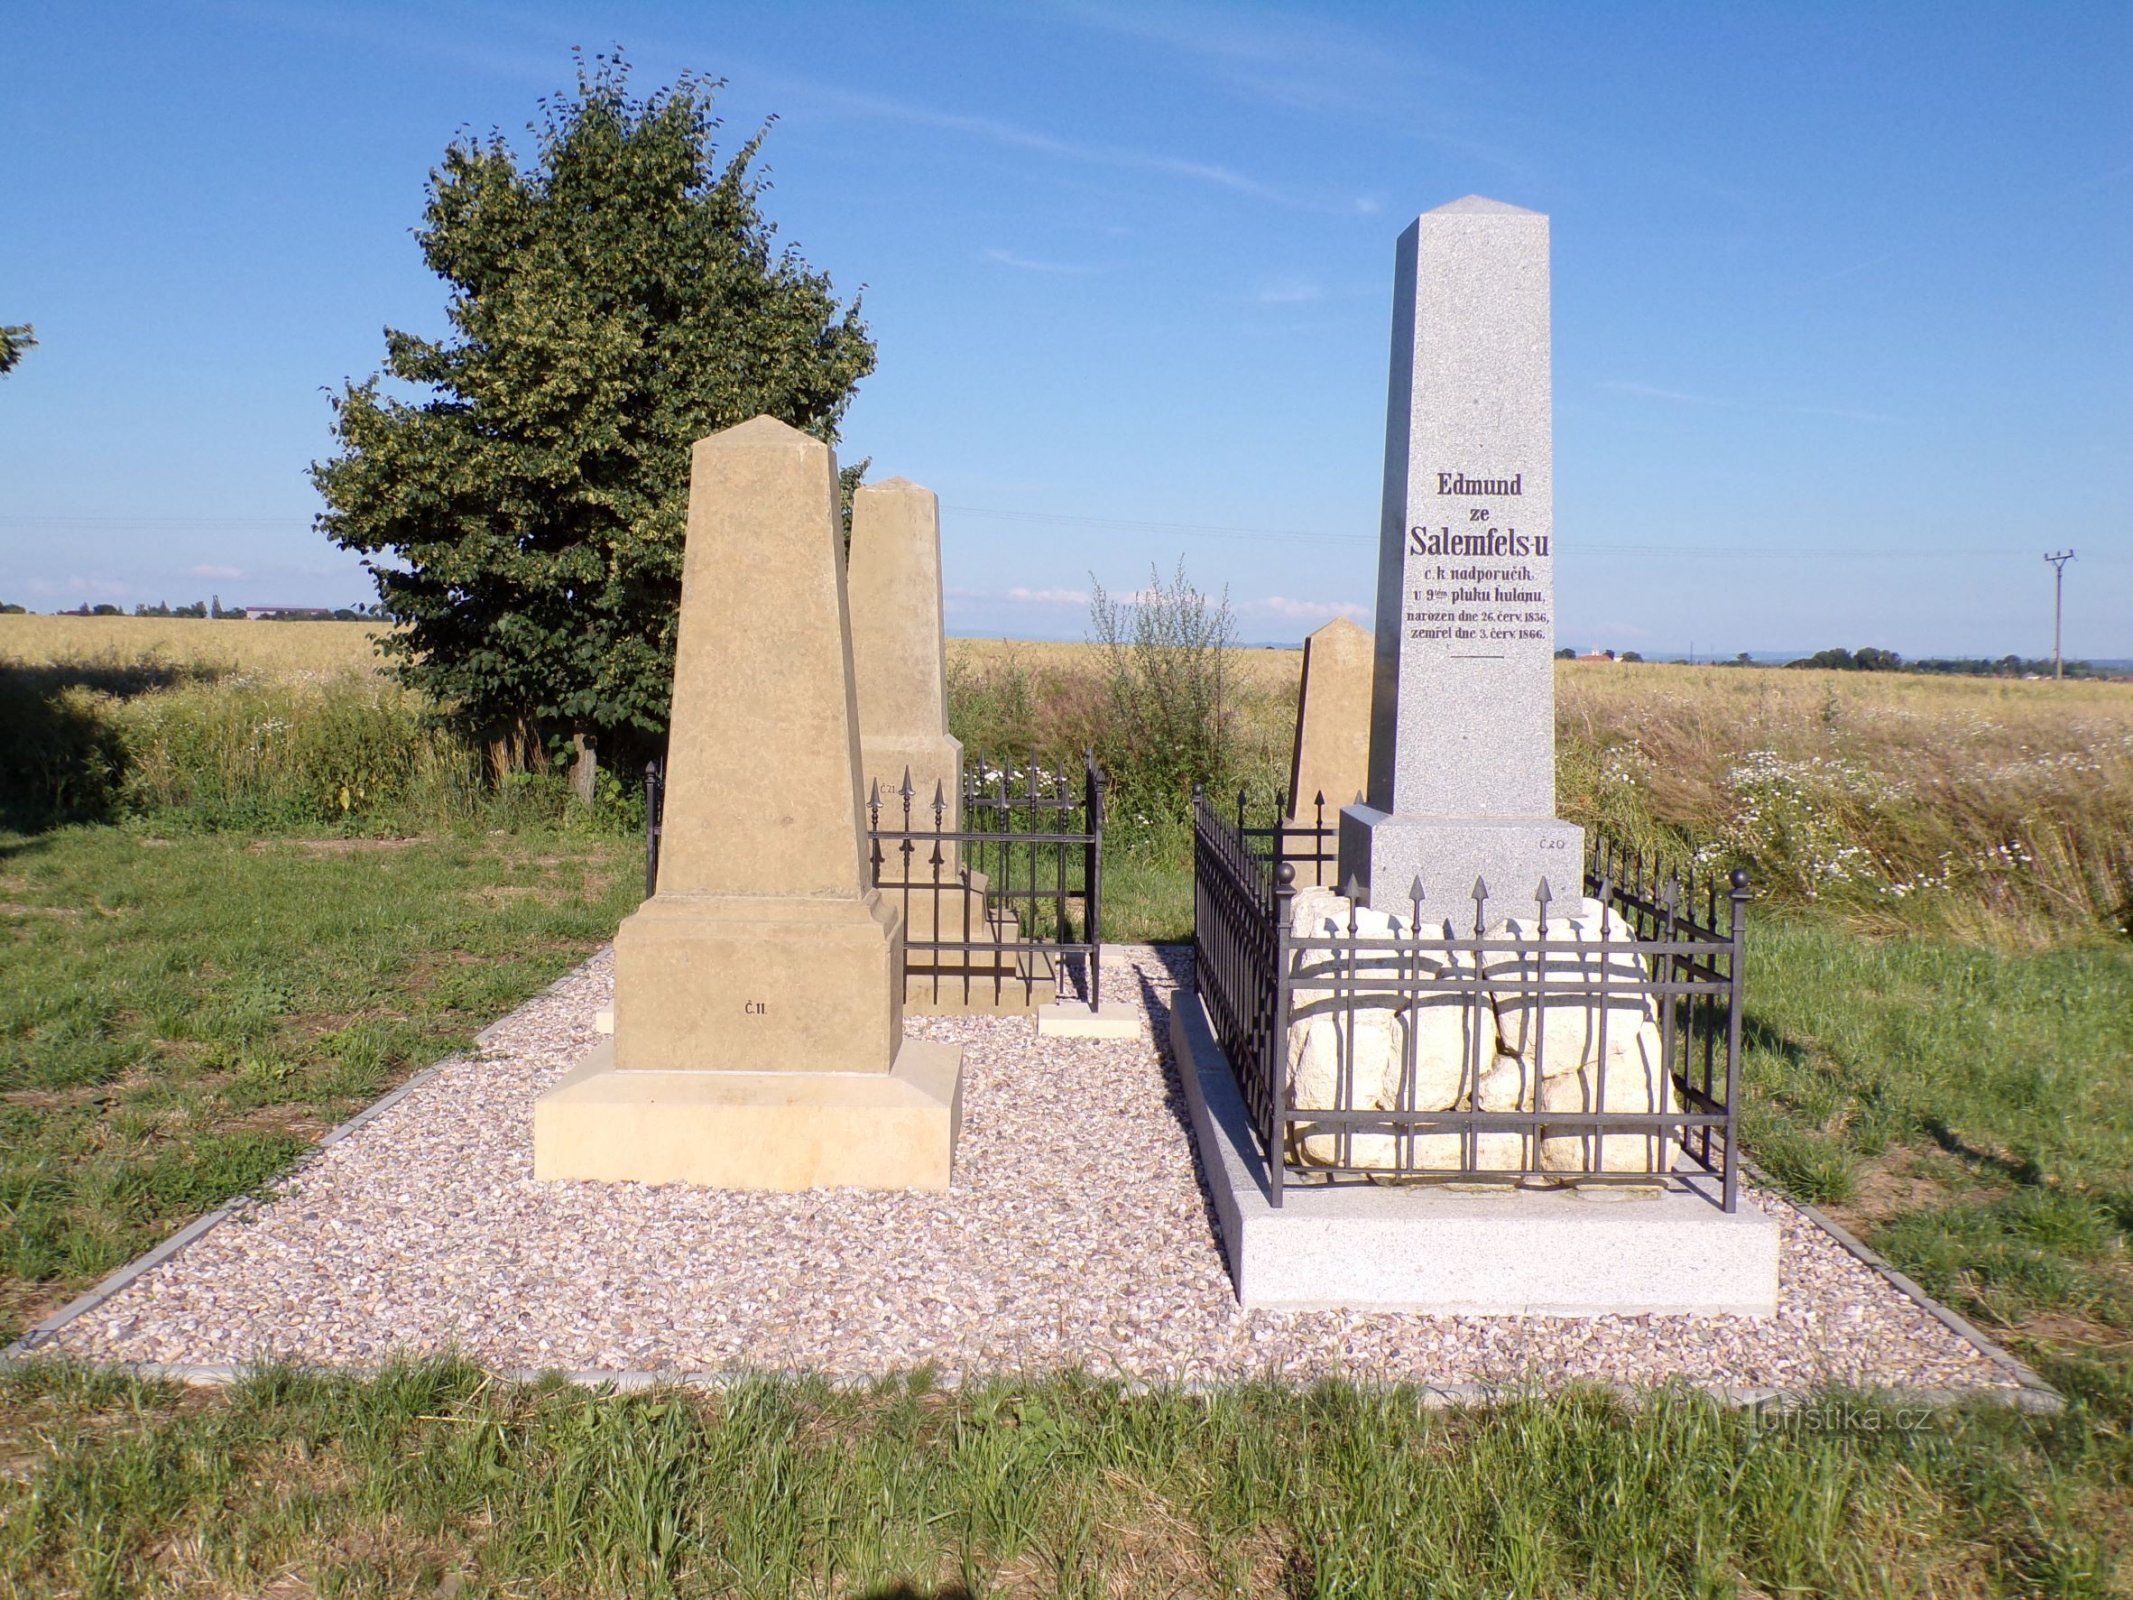 プロイセン・オーストリア戦争の記念碑 (Dlouhé Dvory, 10.7.2021)